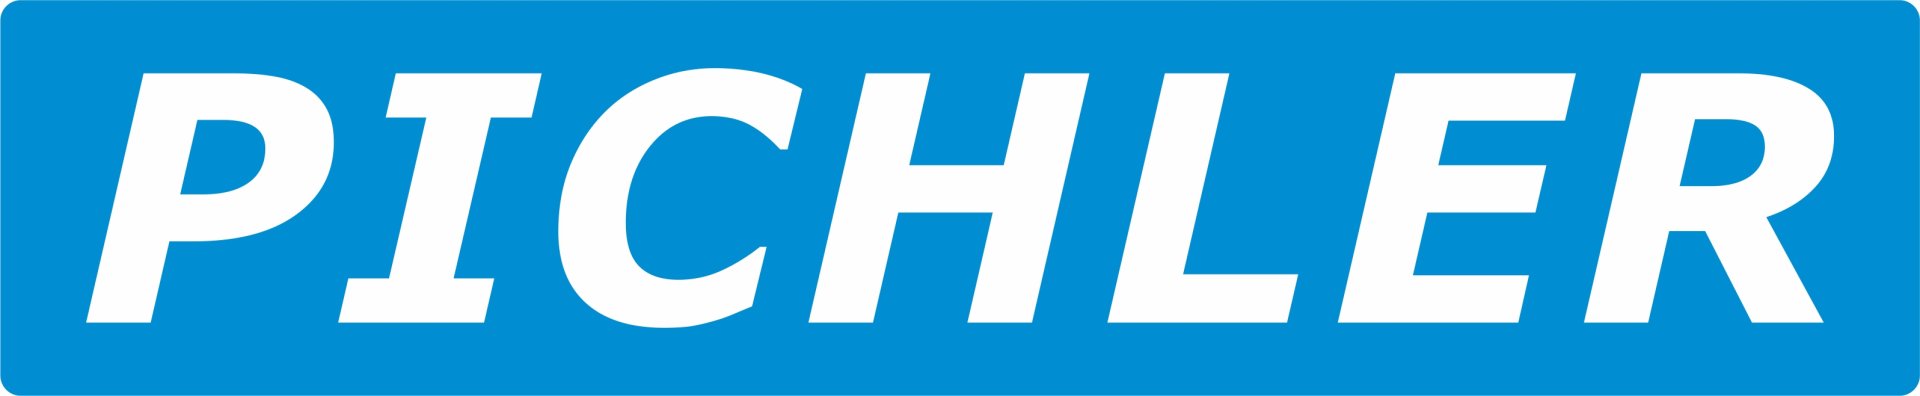 pichler logo.jpg